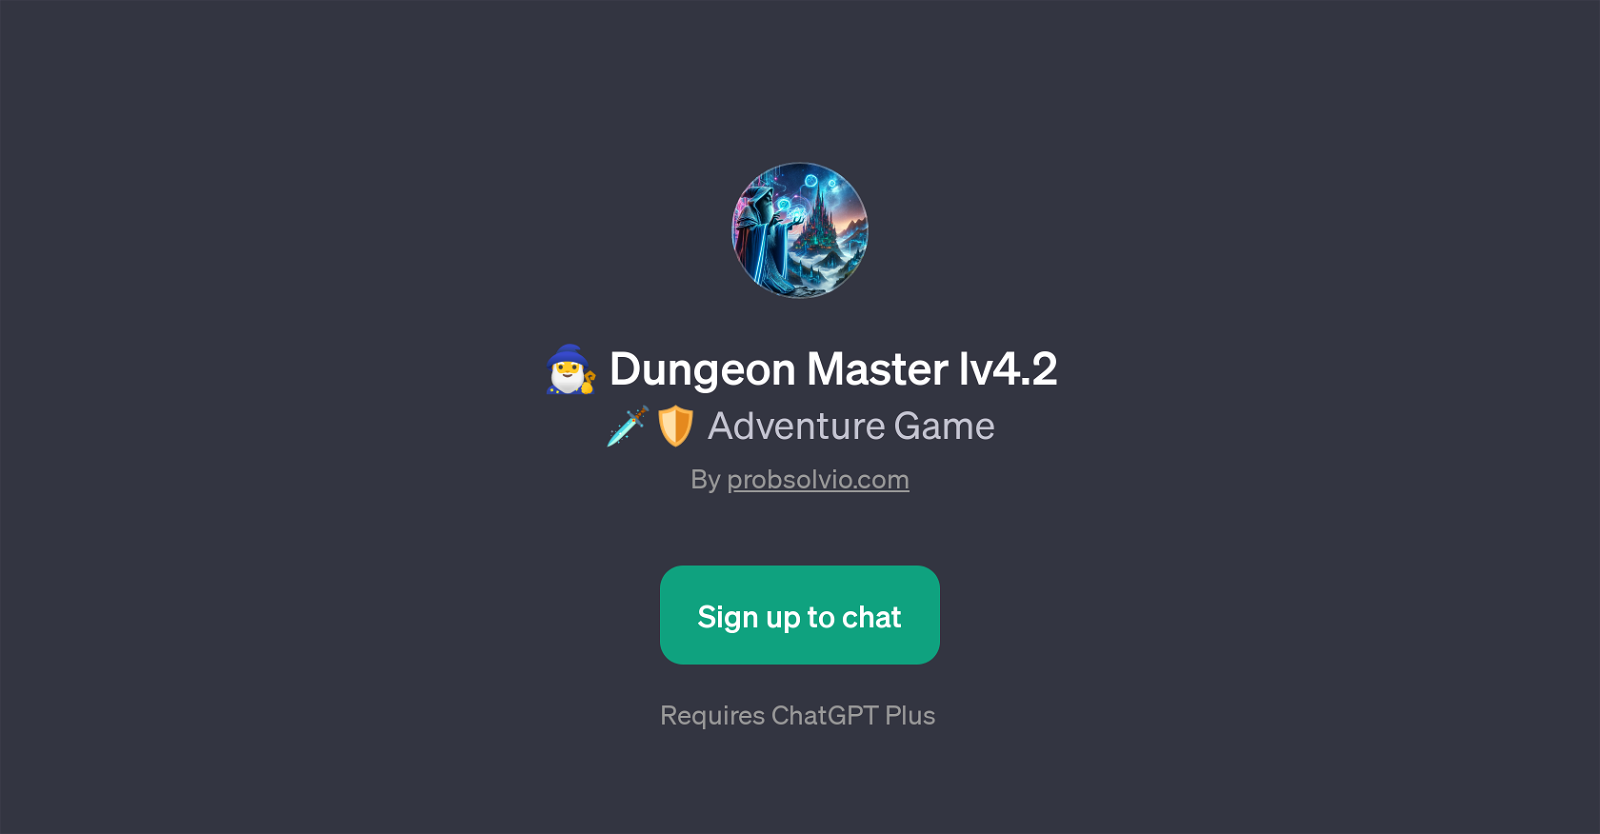 Dungeon Master lv4.2 website